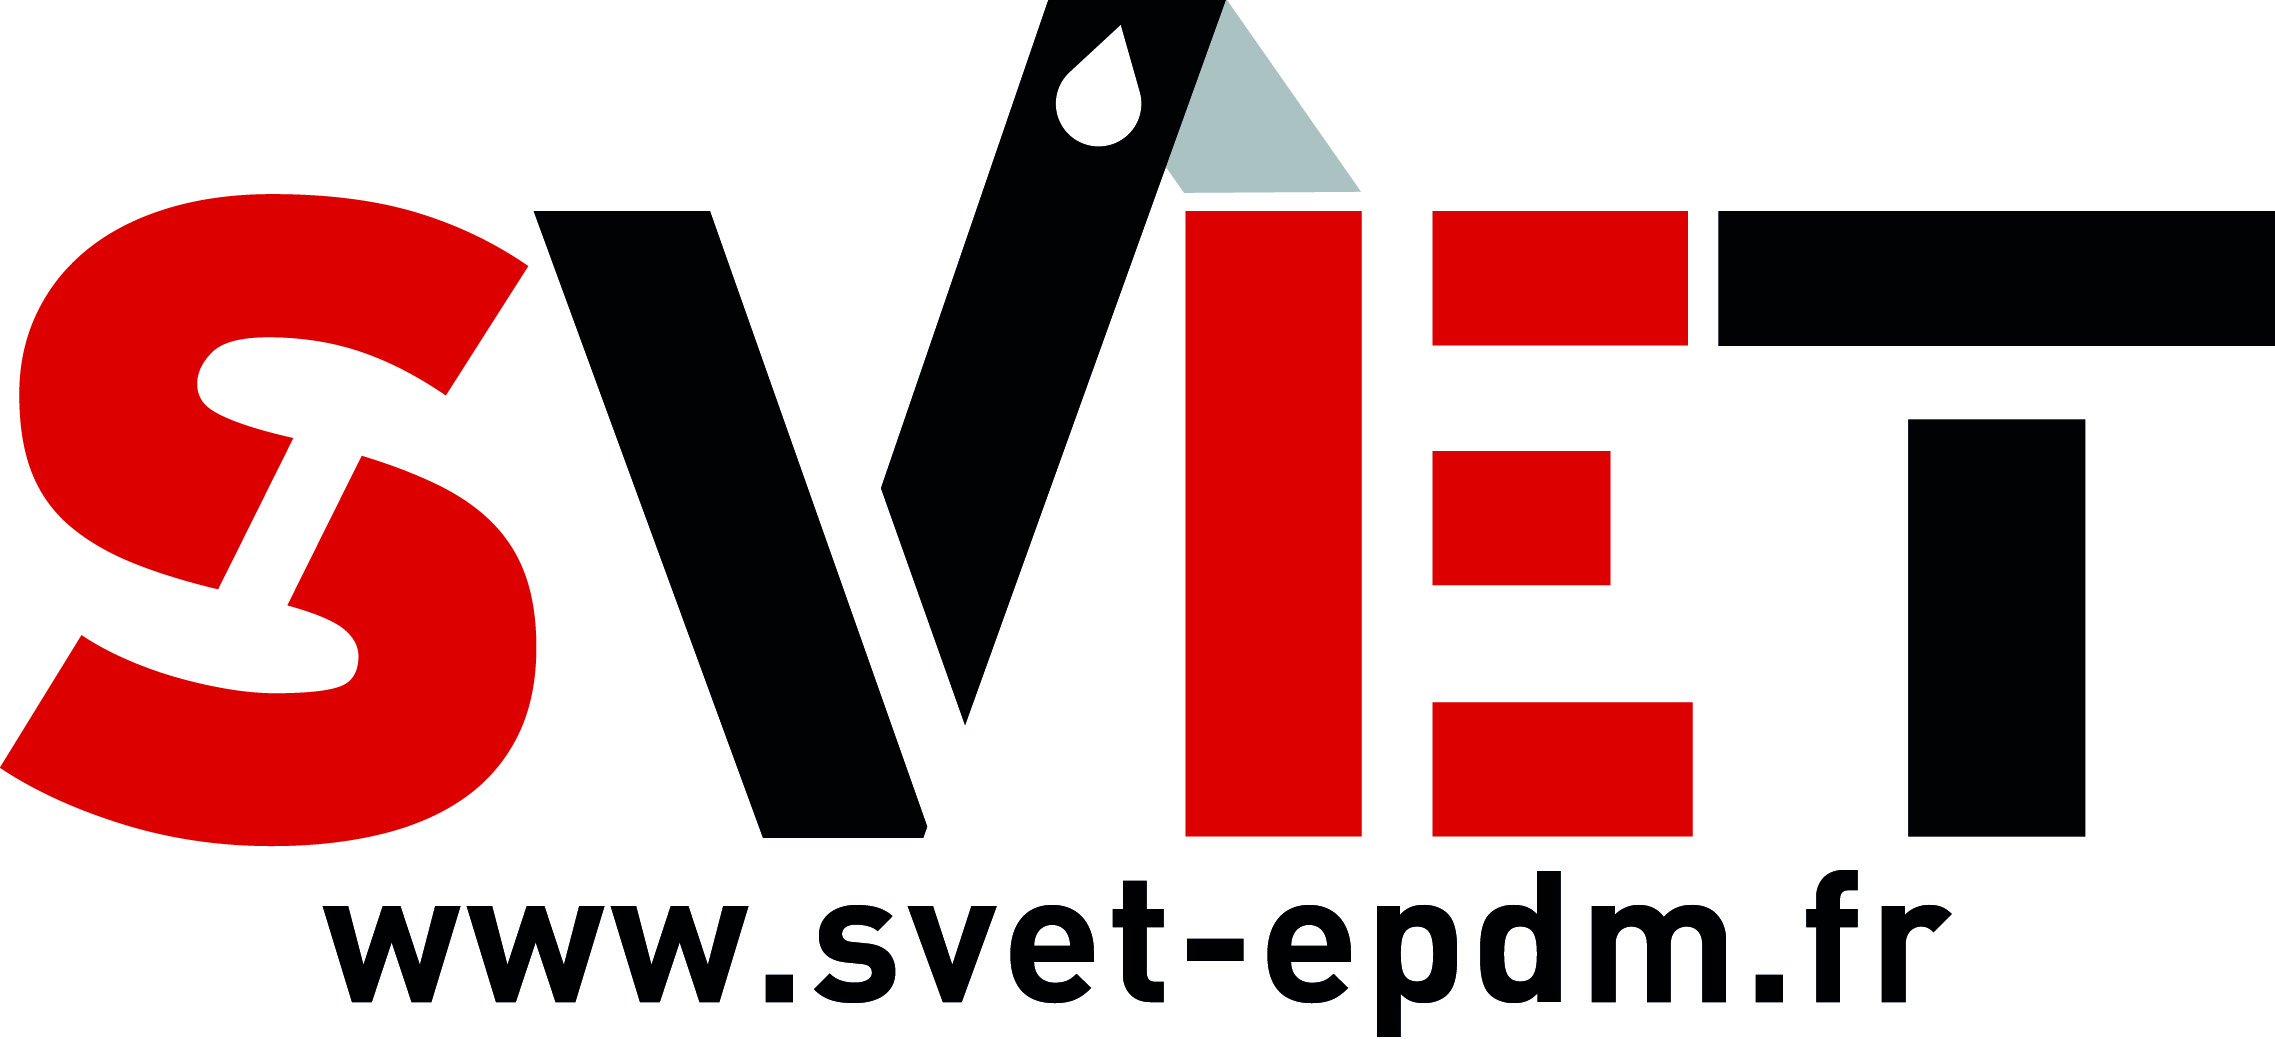 Logo SVET